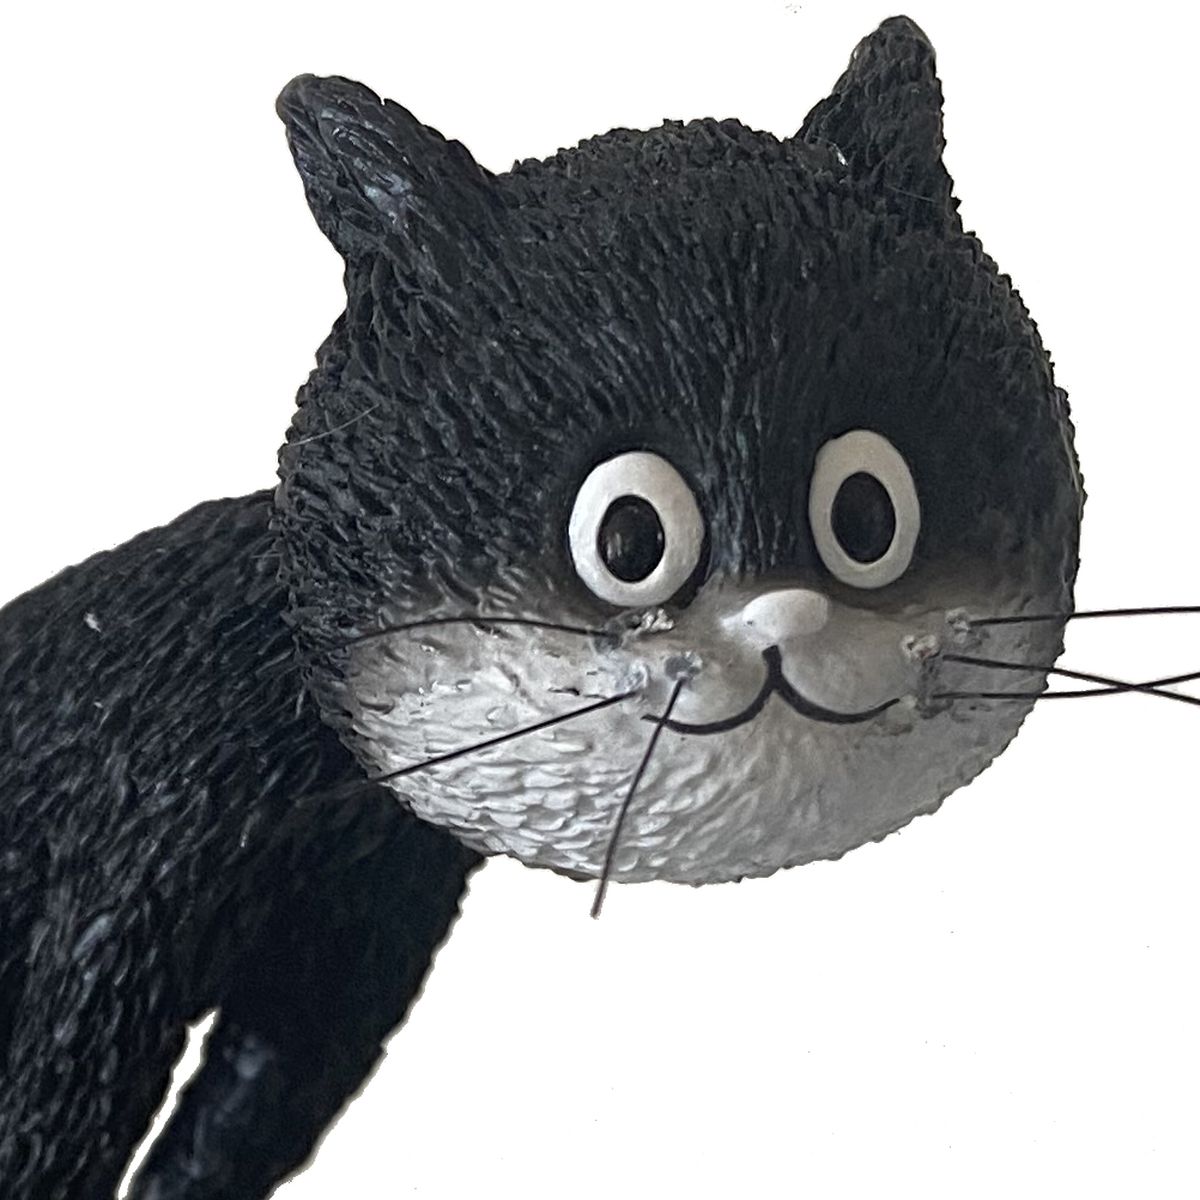 Statuette Les chats par Dubout